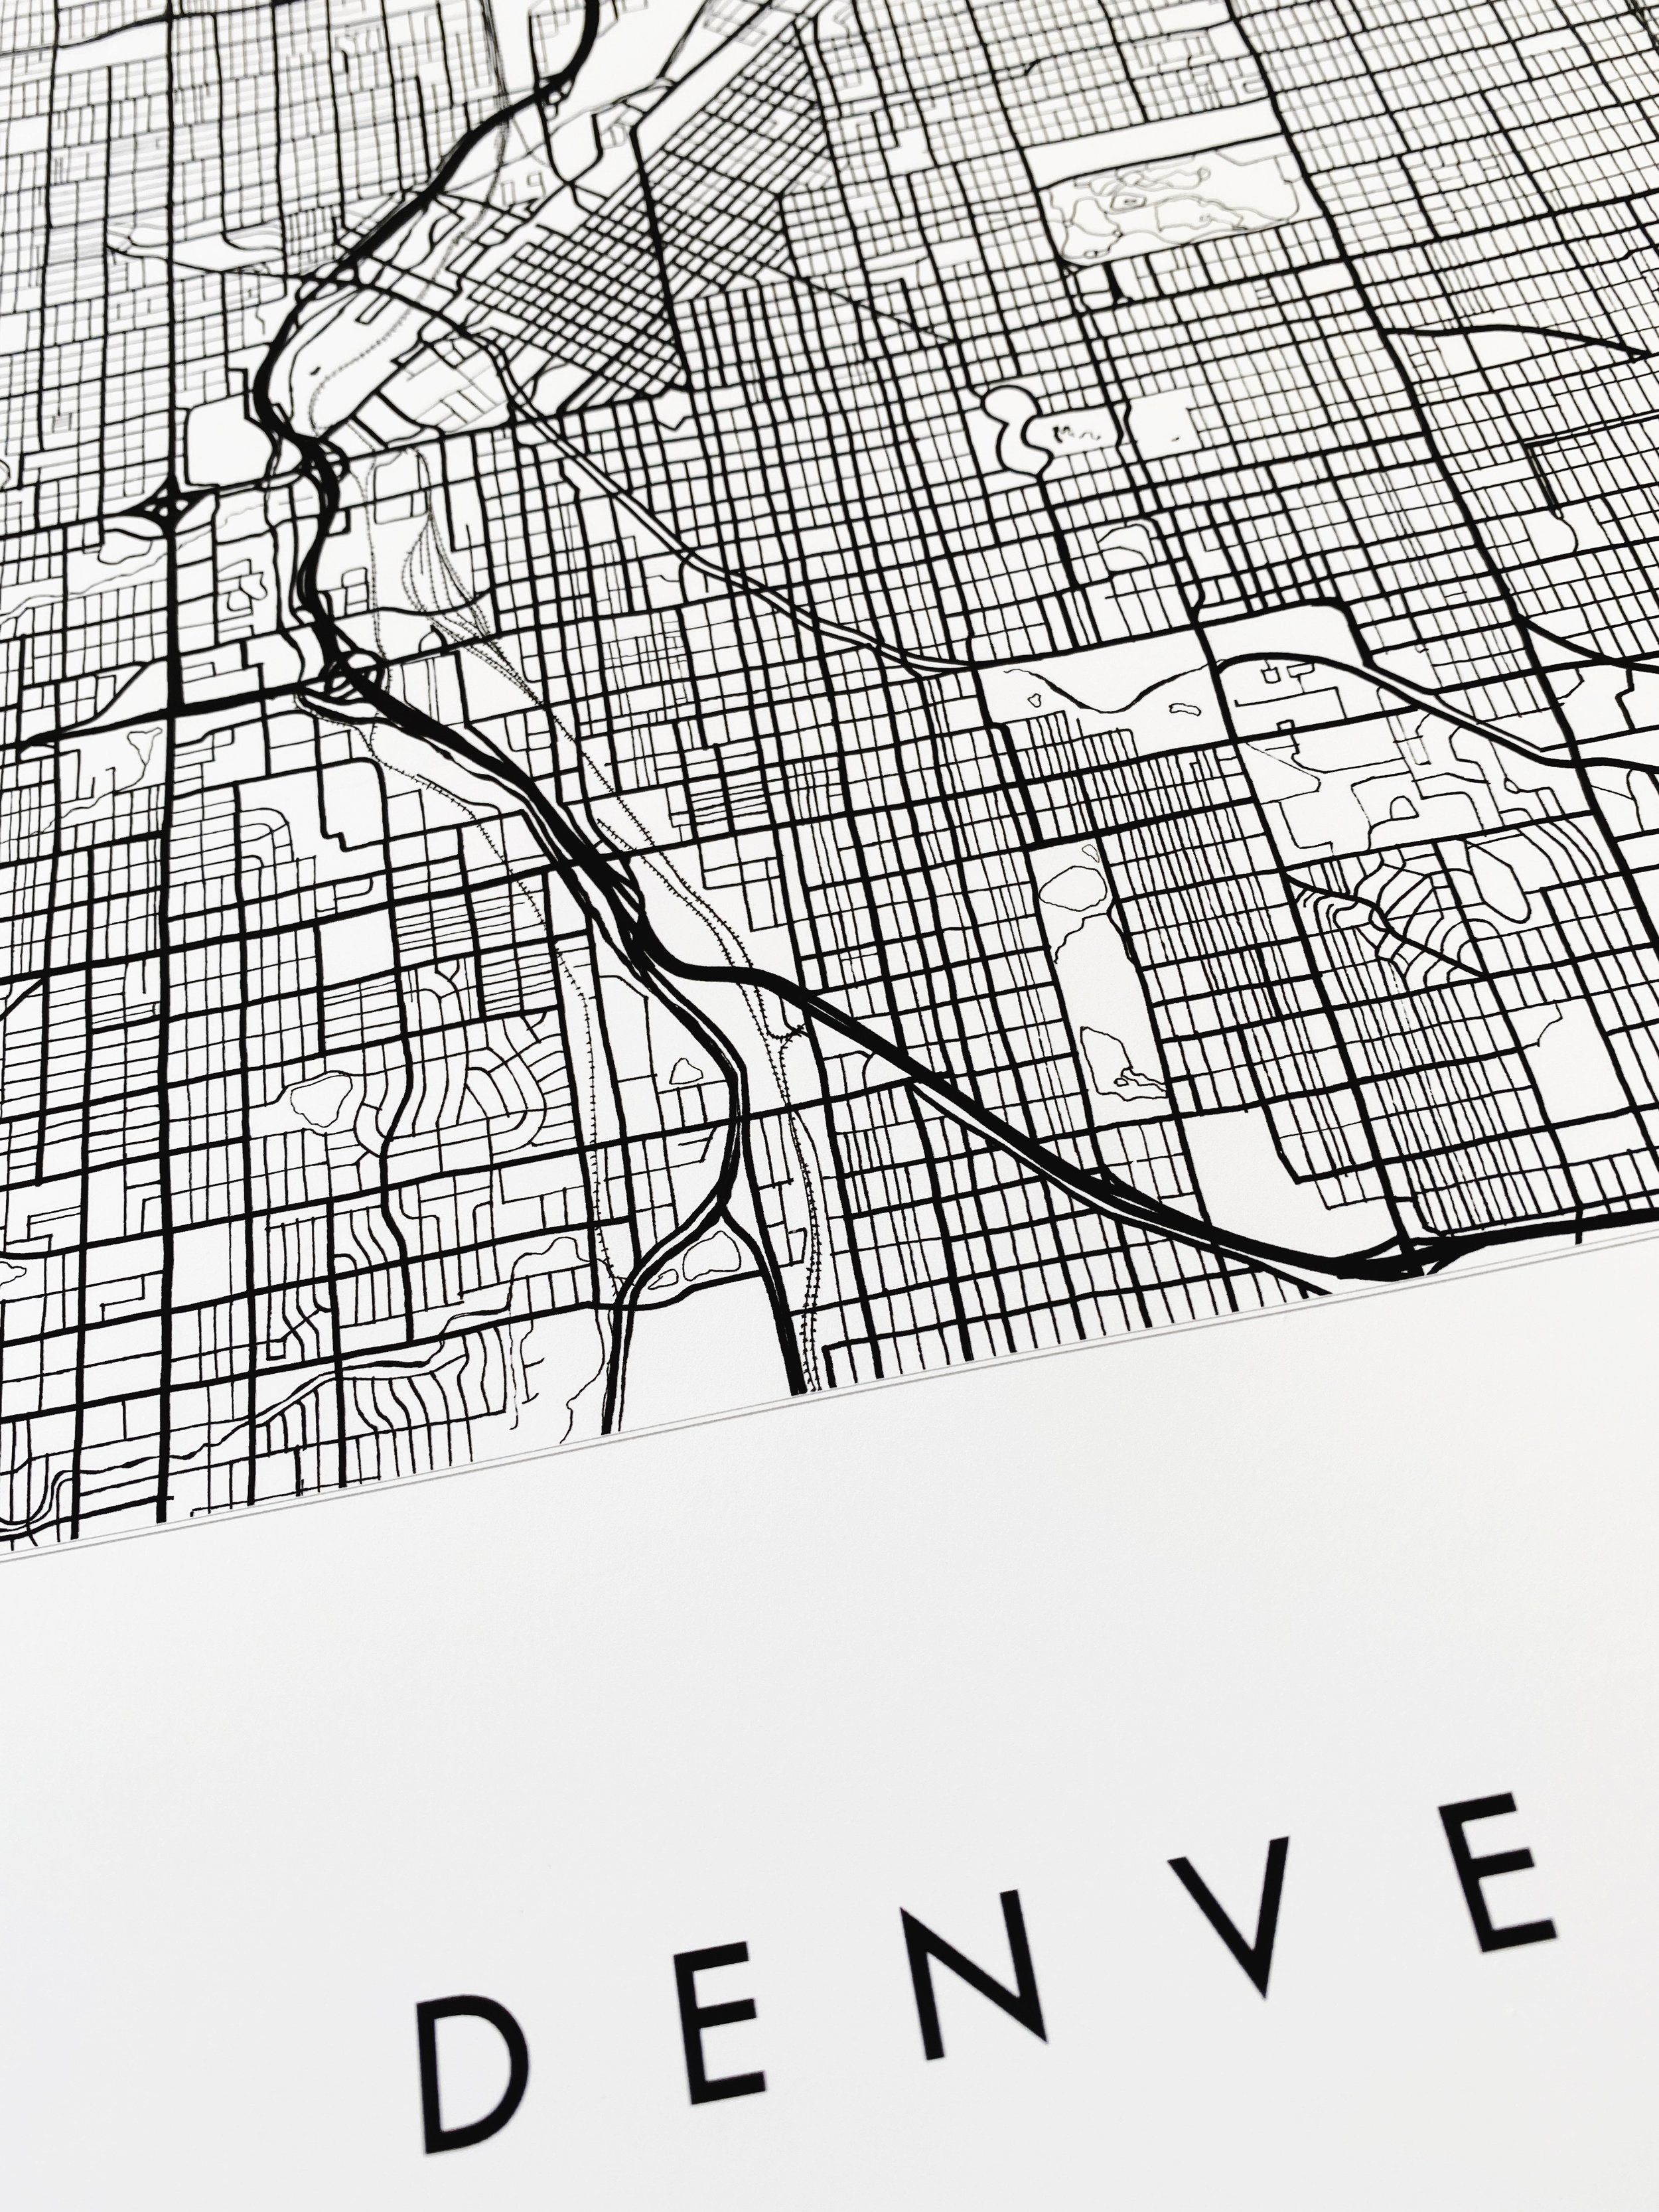 DENVER Colorado City Lines Map: PRINT